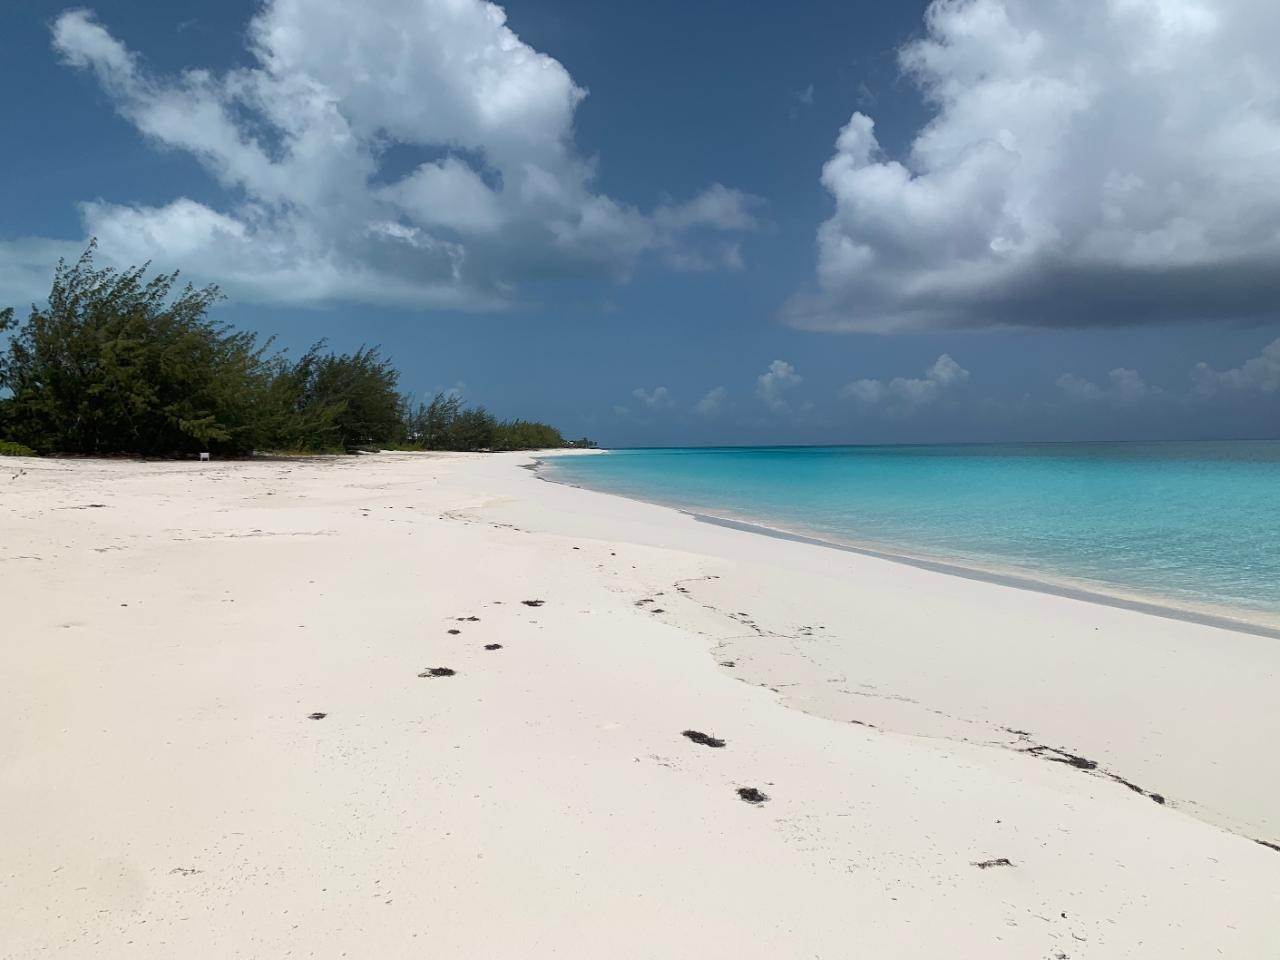 Land for Sale at Cape Santa Maria, Long Island Bahamas